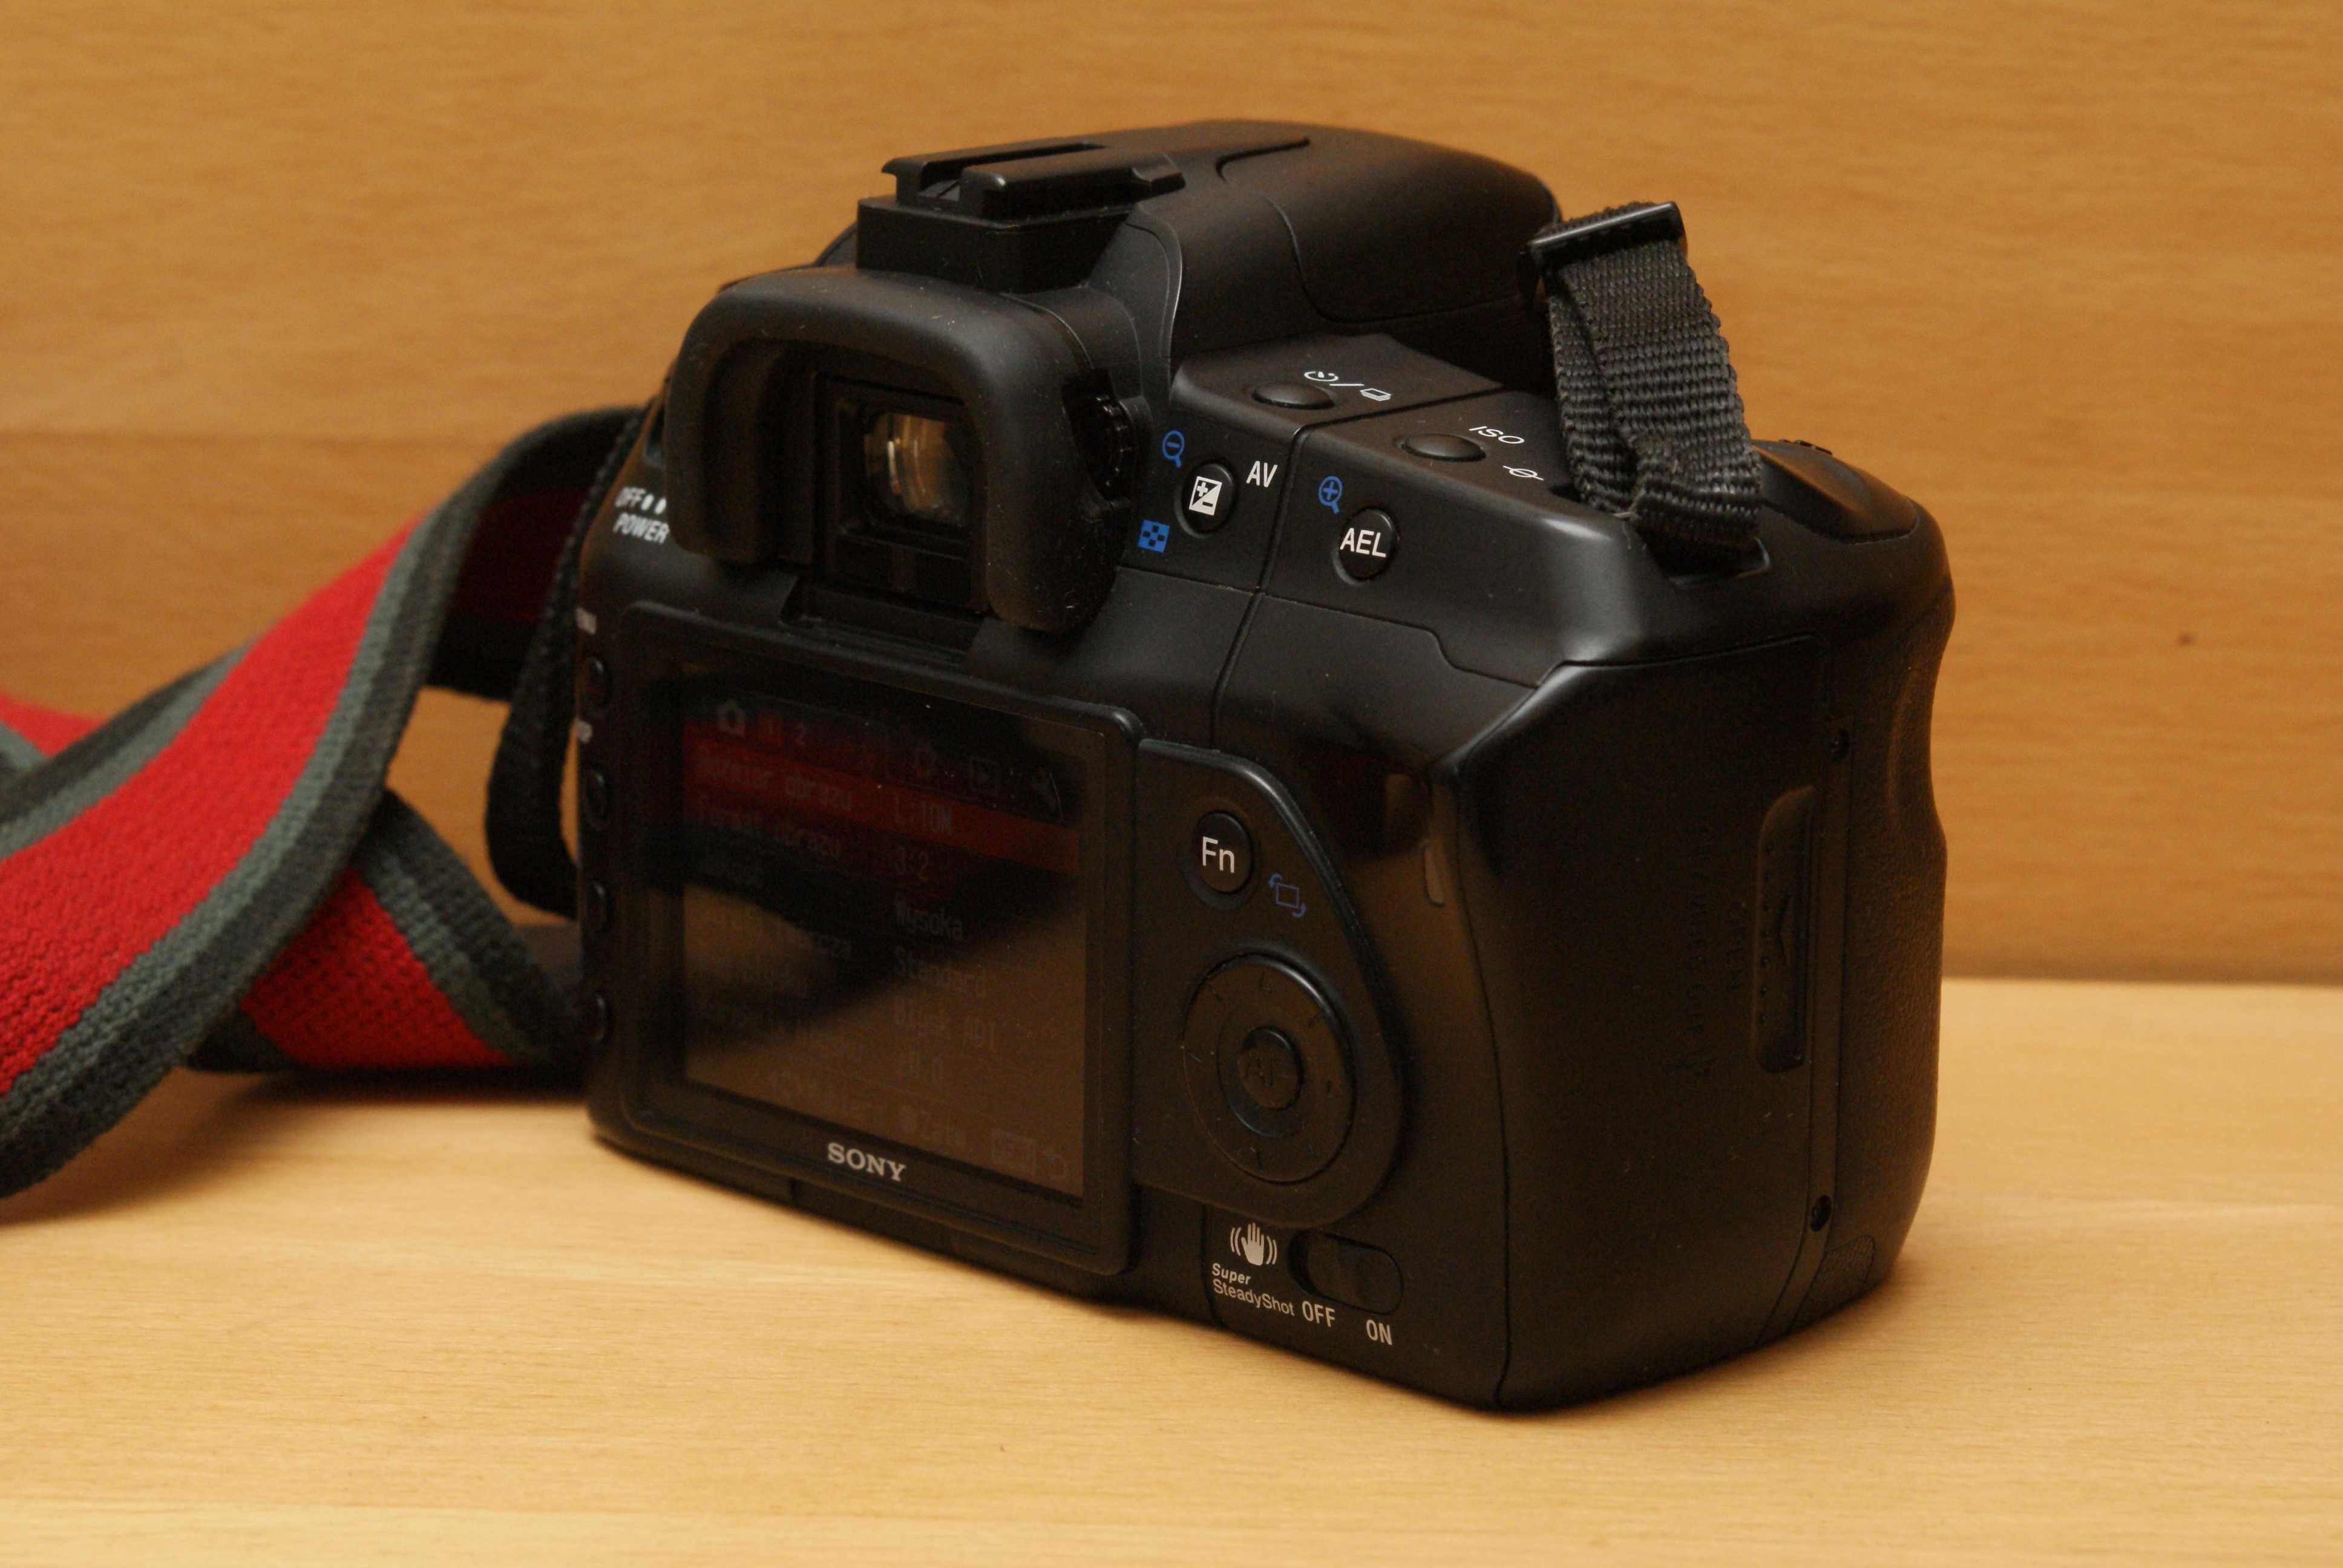 Sony Alpha 200 body aparat fotograficzny.